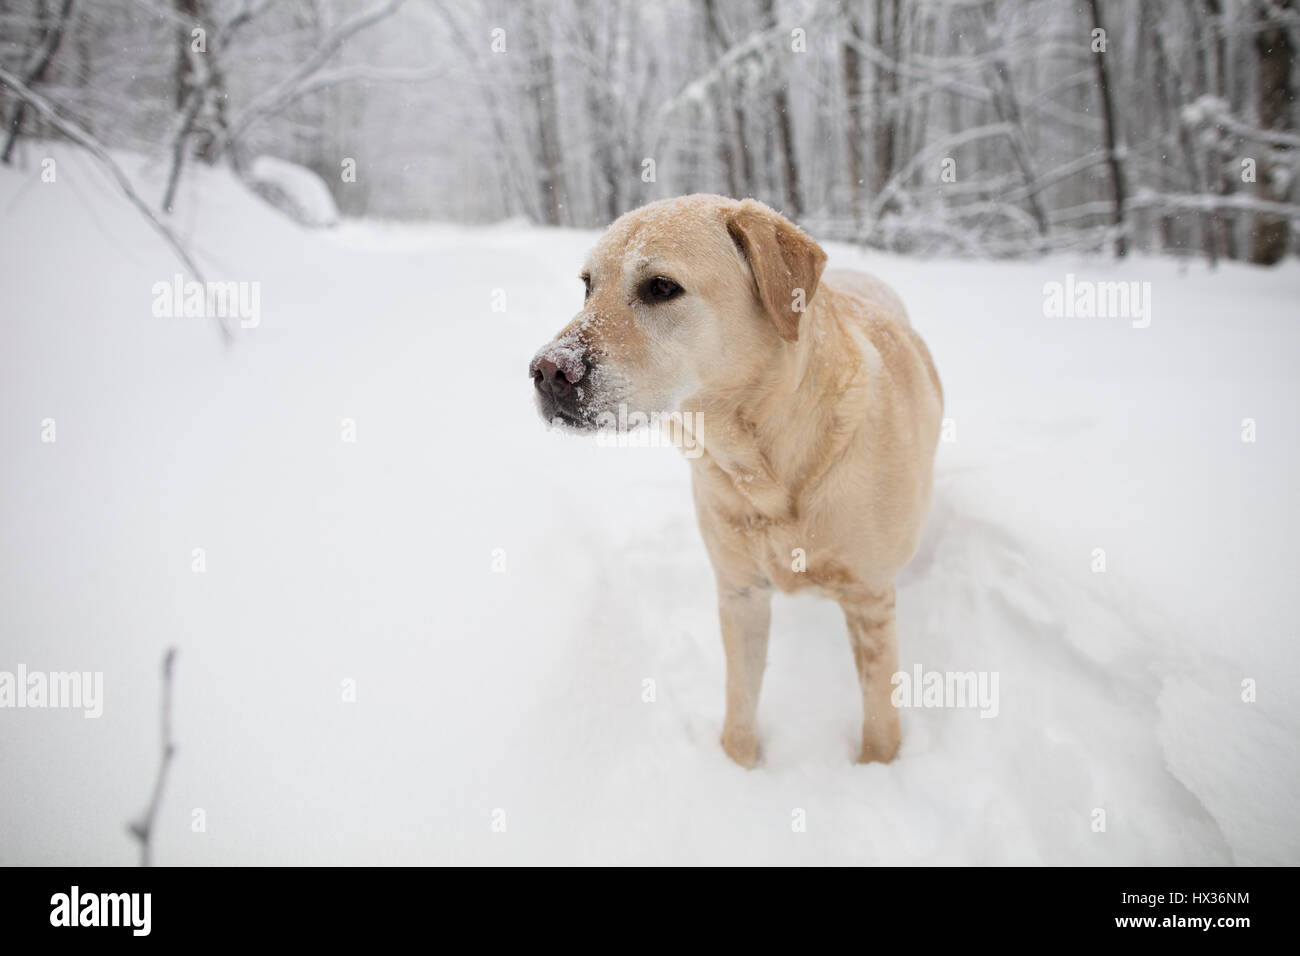 Un Labrador Retriever jaune (yellow lab) chien marche dans la neige au cours d'une tempête de neige dans la région de Hastings Highlands, Ontario, Canada. Banque D'Images